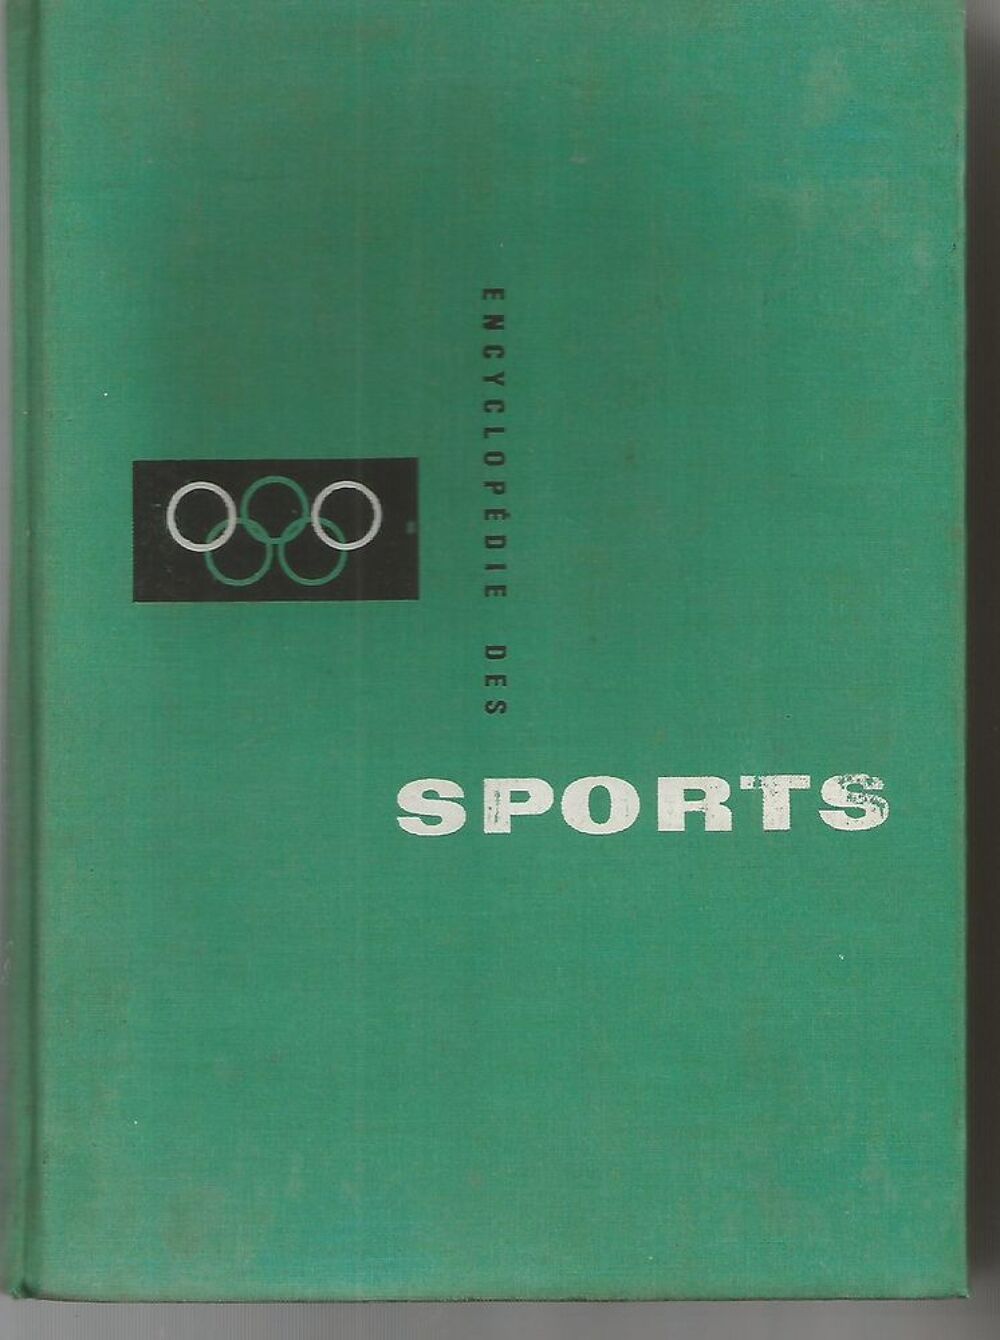 ENCYCLOPEDIE des SPORTS - LAROUSSE -1961 Livres et BD